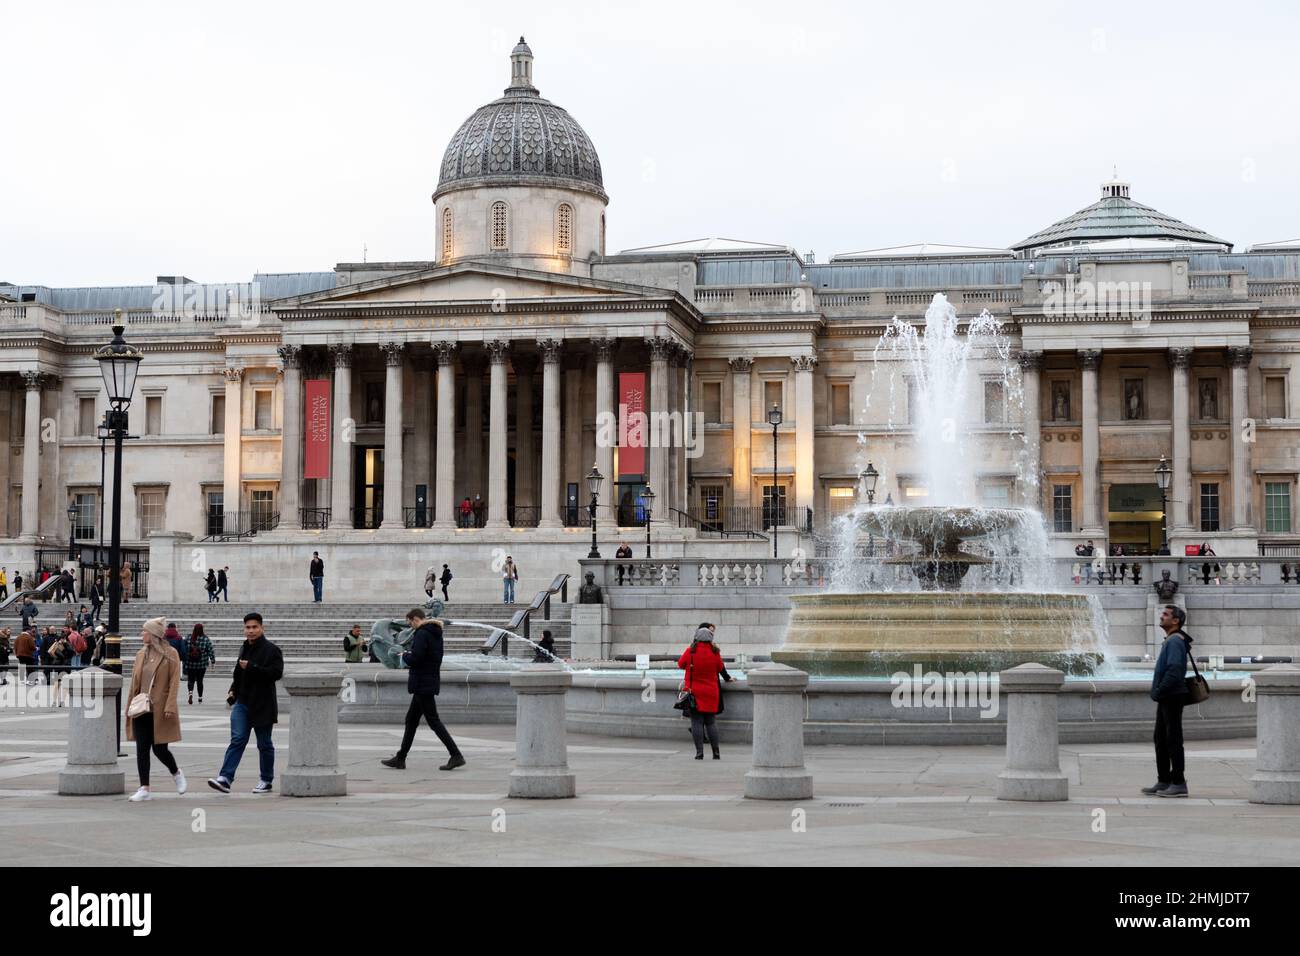 Eine allgemeine Ansicht des Trafalgar Square, London, mit der National Gallery (L) und der National Portrait Gallery (R). Stockfoto